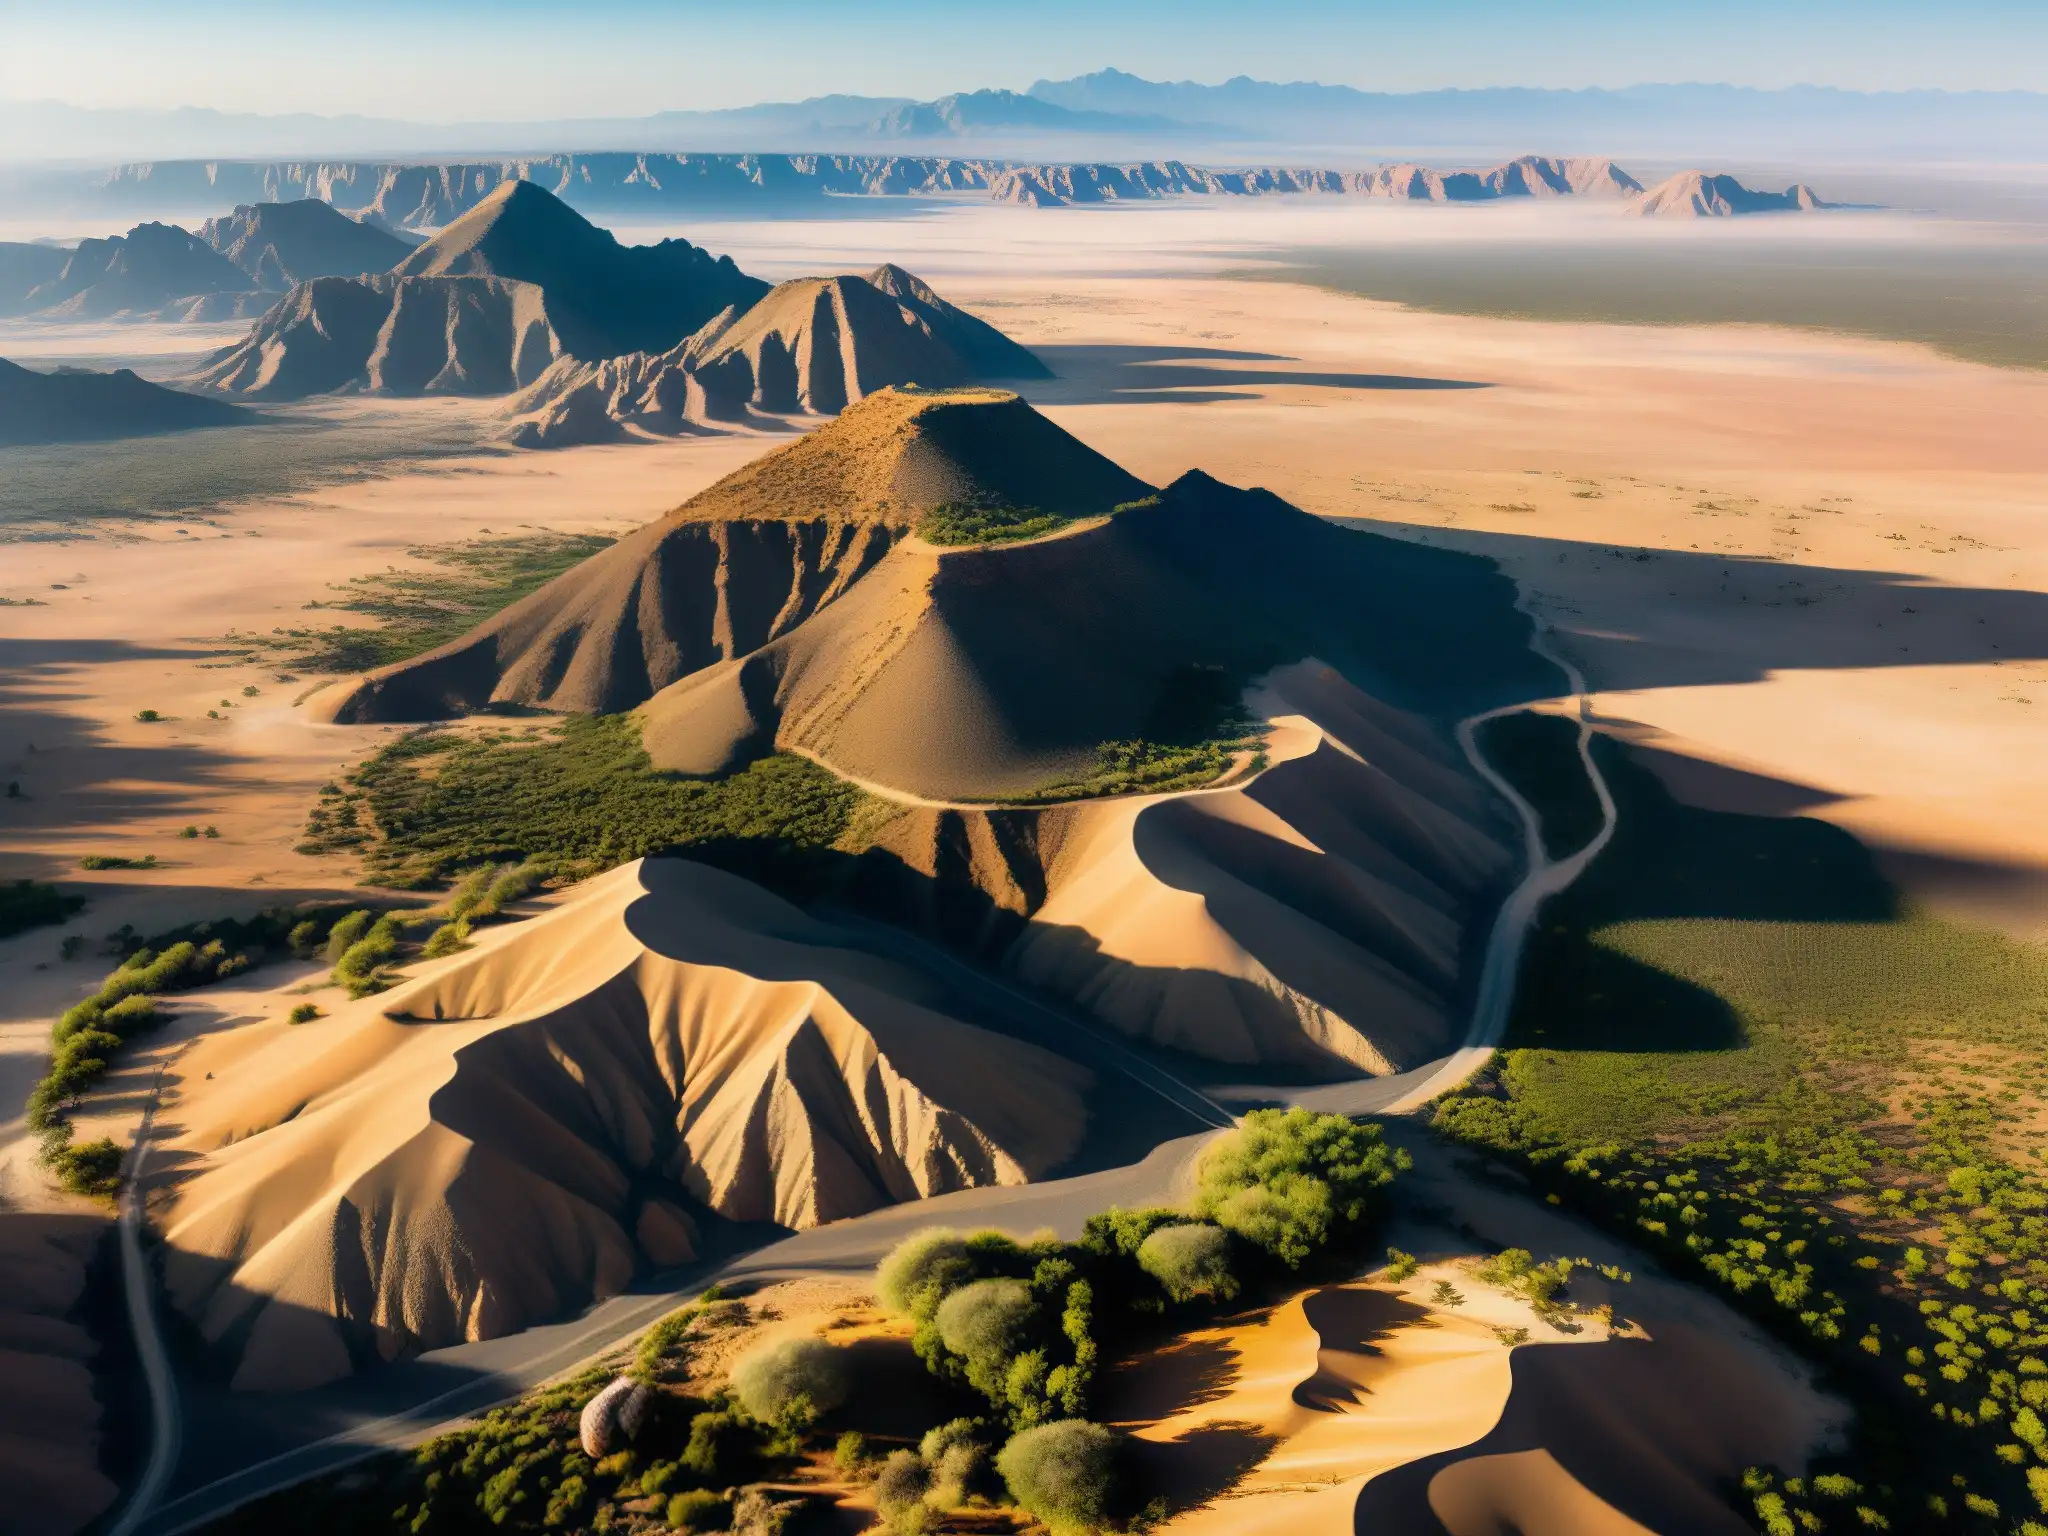 Vista aérea del misterioso paisaje del Desierto de la Zona del Silencio en México, con formaciones rocosas únicas y vegetación escasa